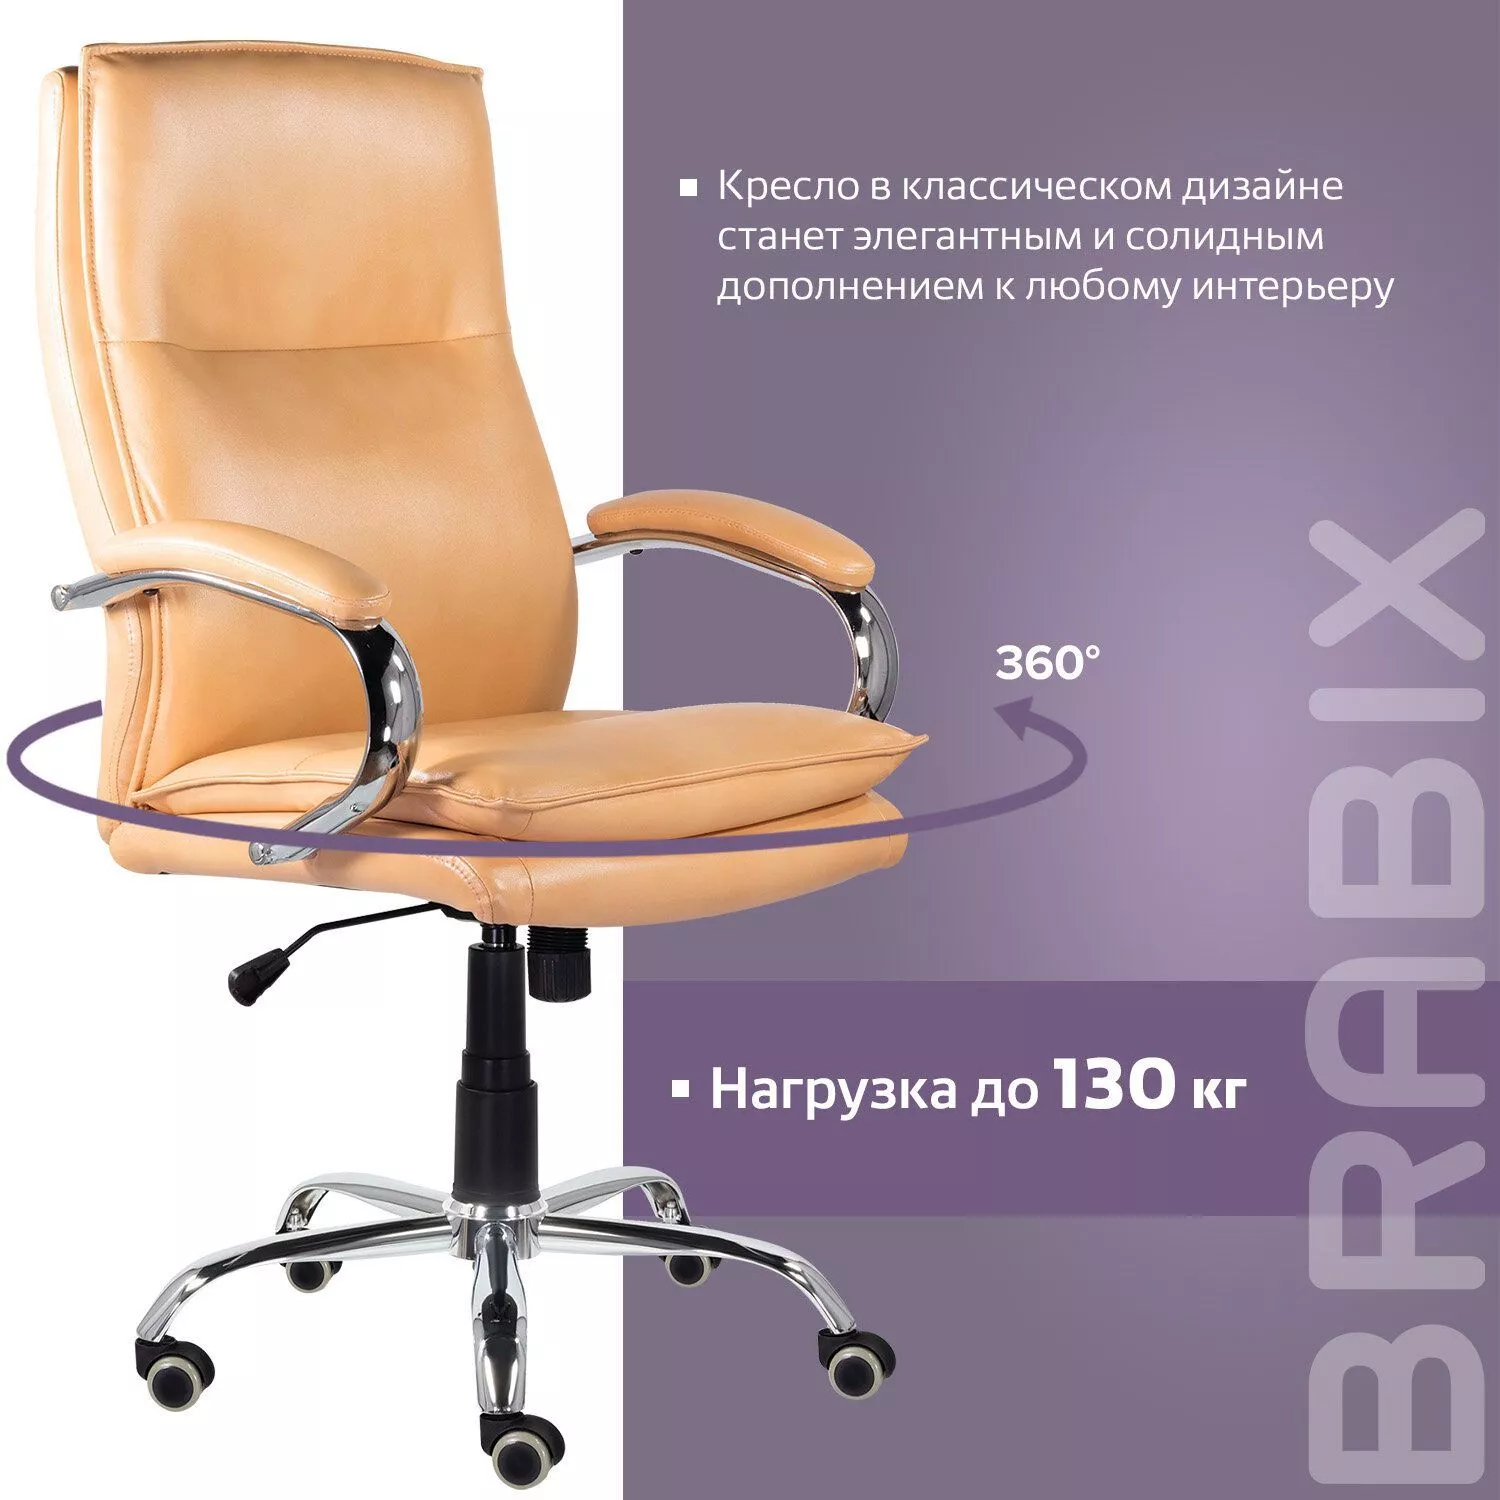 Кресло офисное BRABIX PREMIUM Cuba EX-542 бежевый 532551